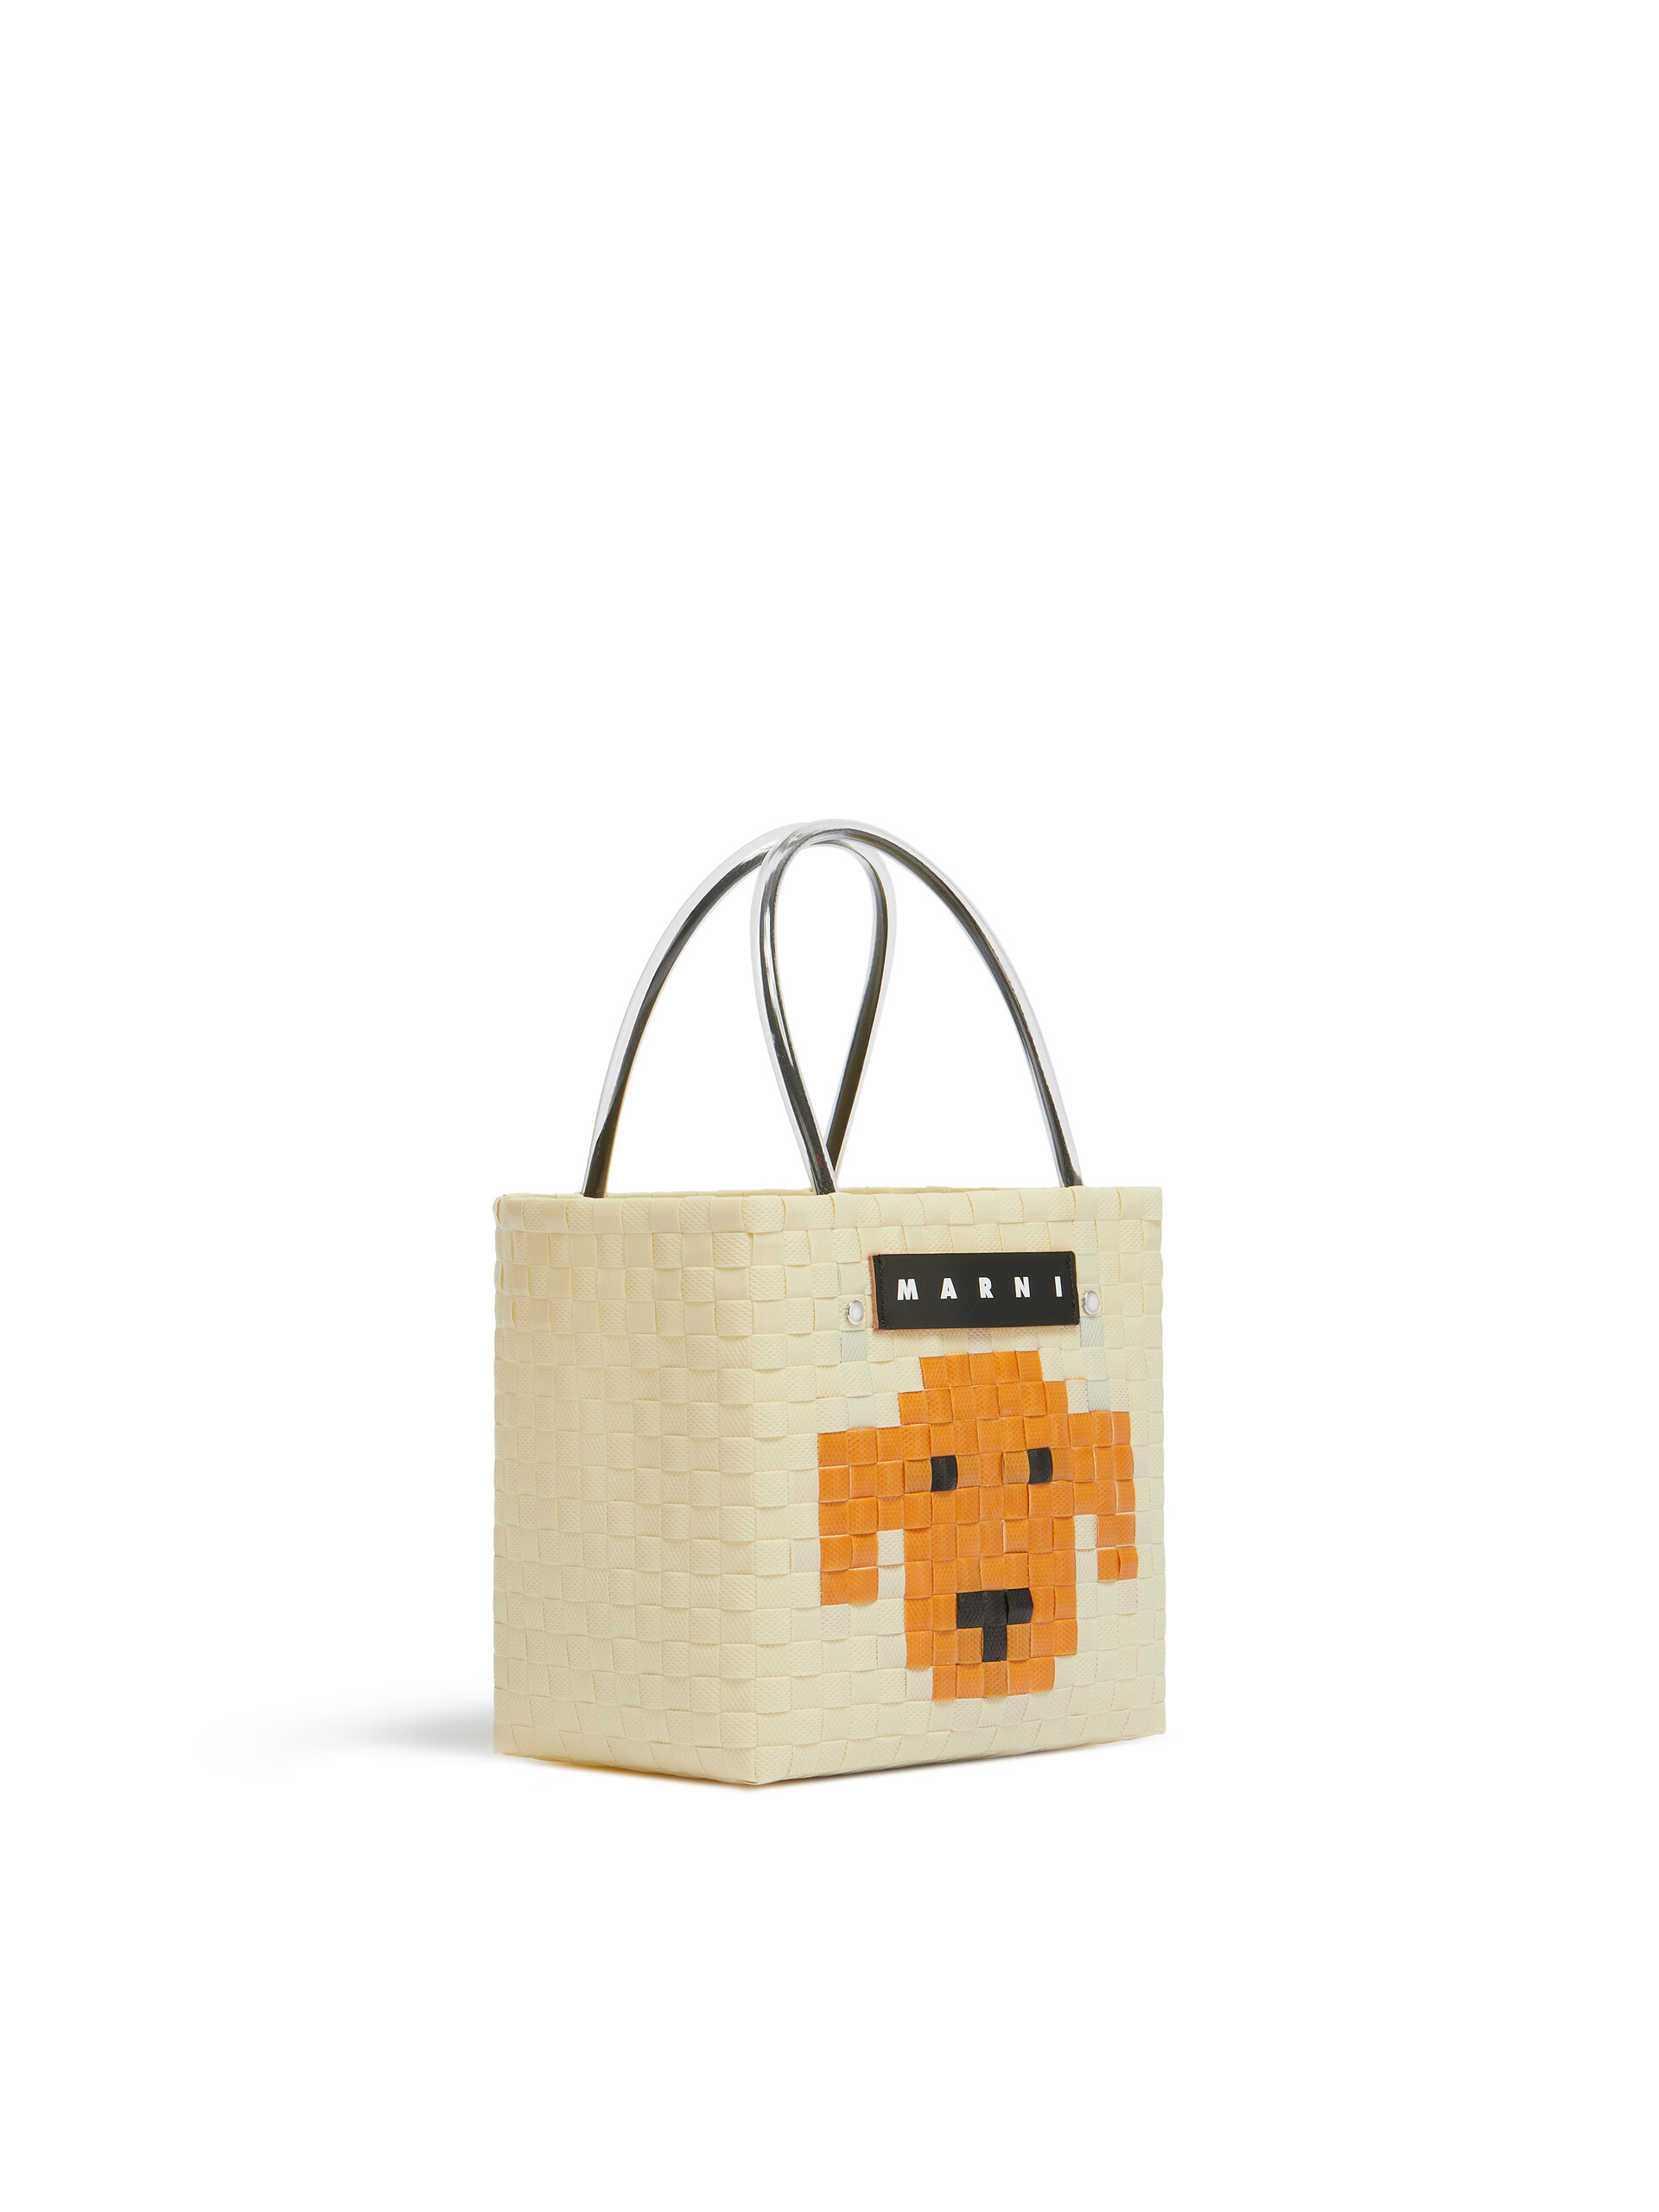 Light pink MARNI MARKET ANIMAL BASKET bag - Shopping Bags - Image 2